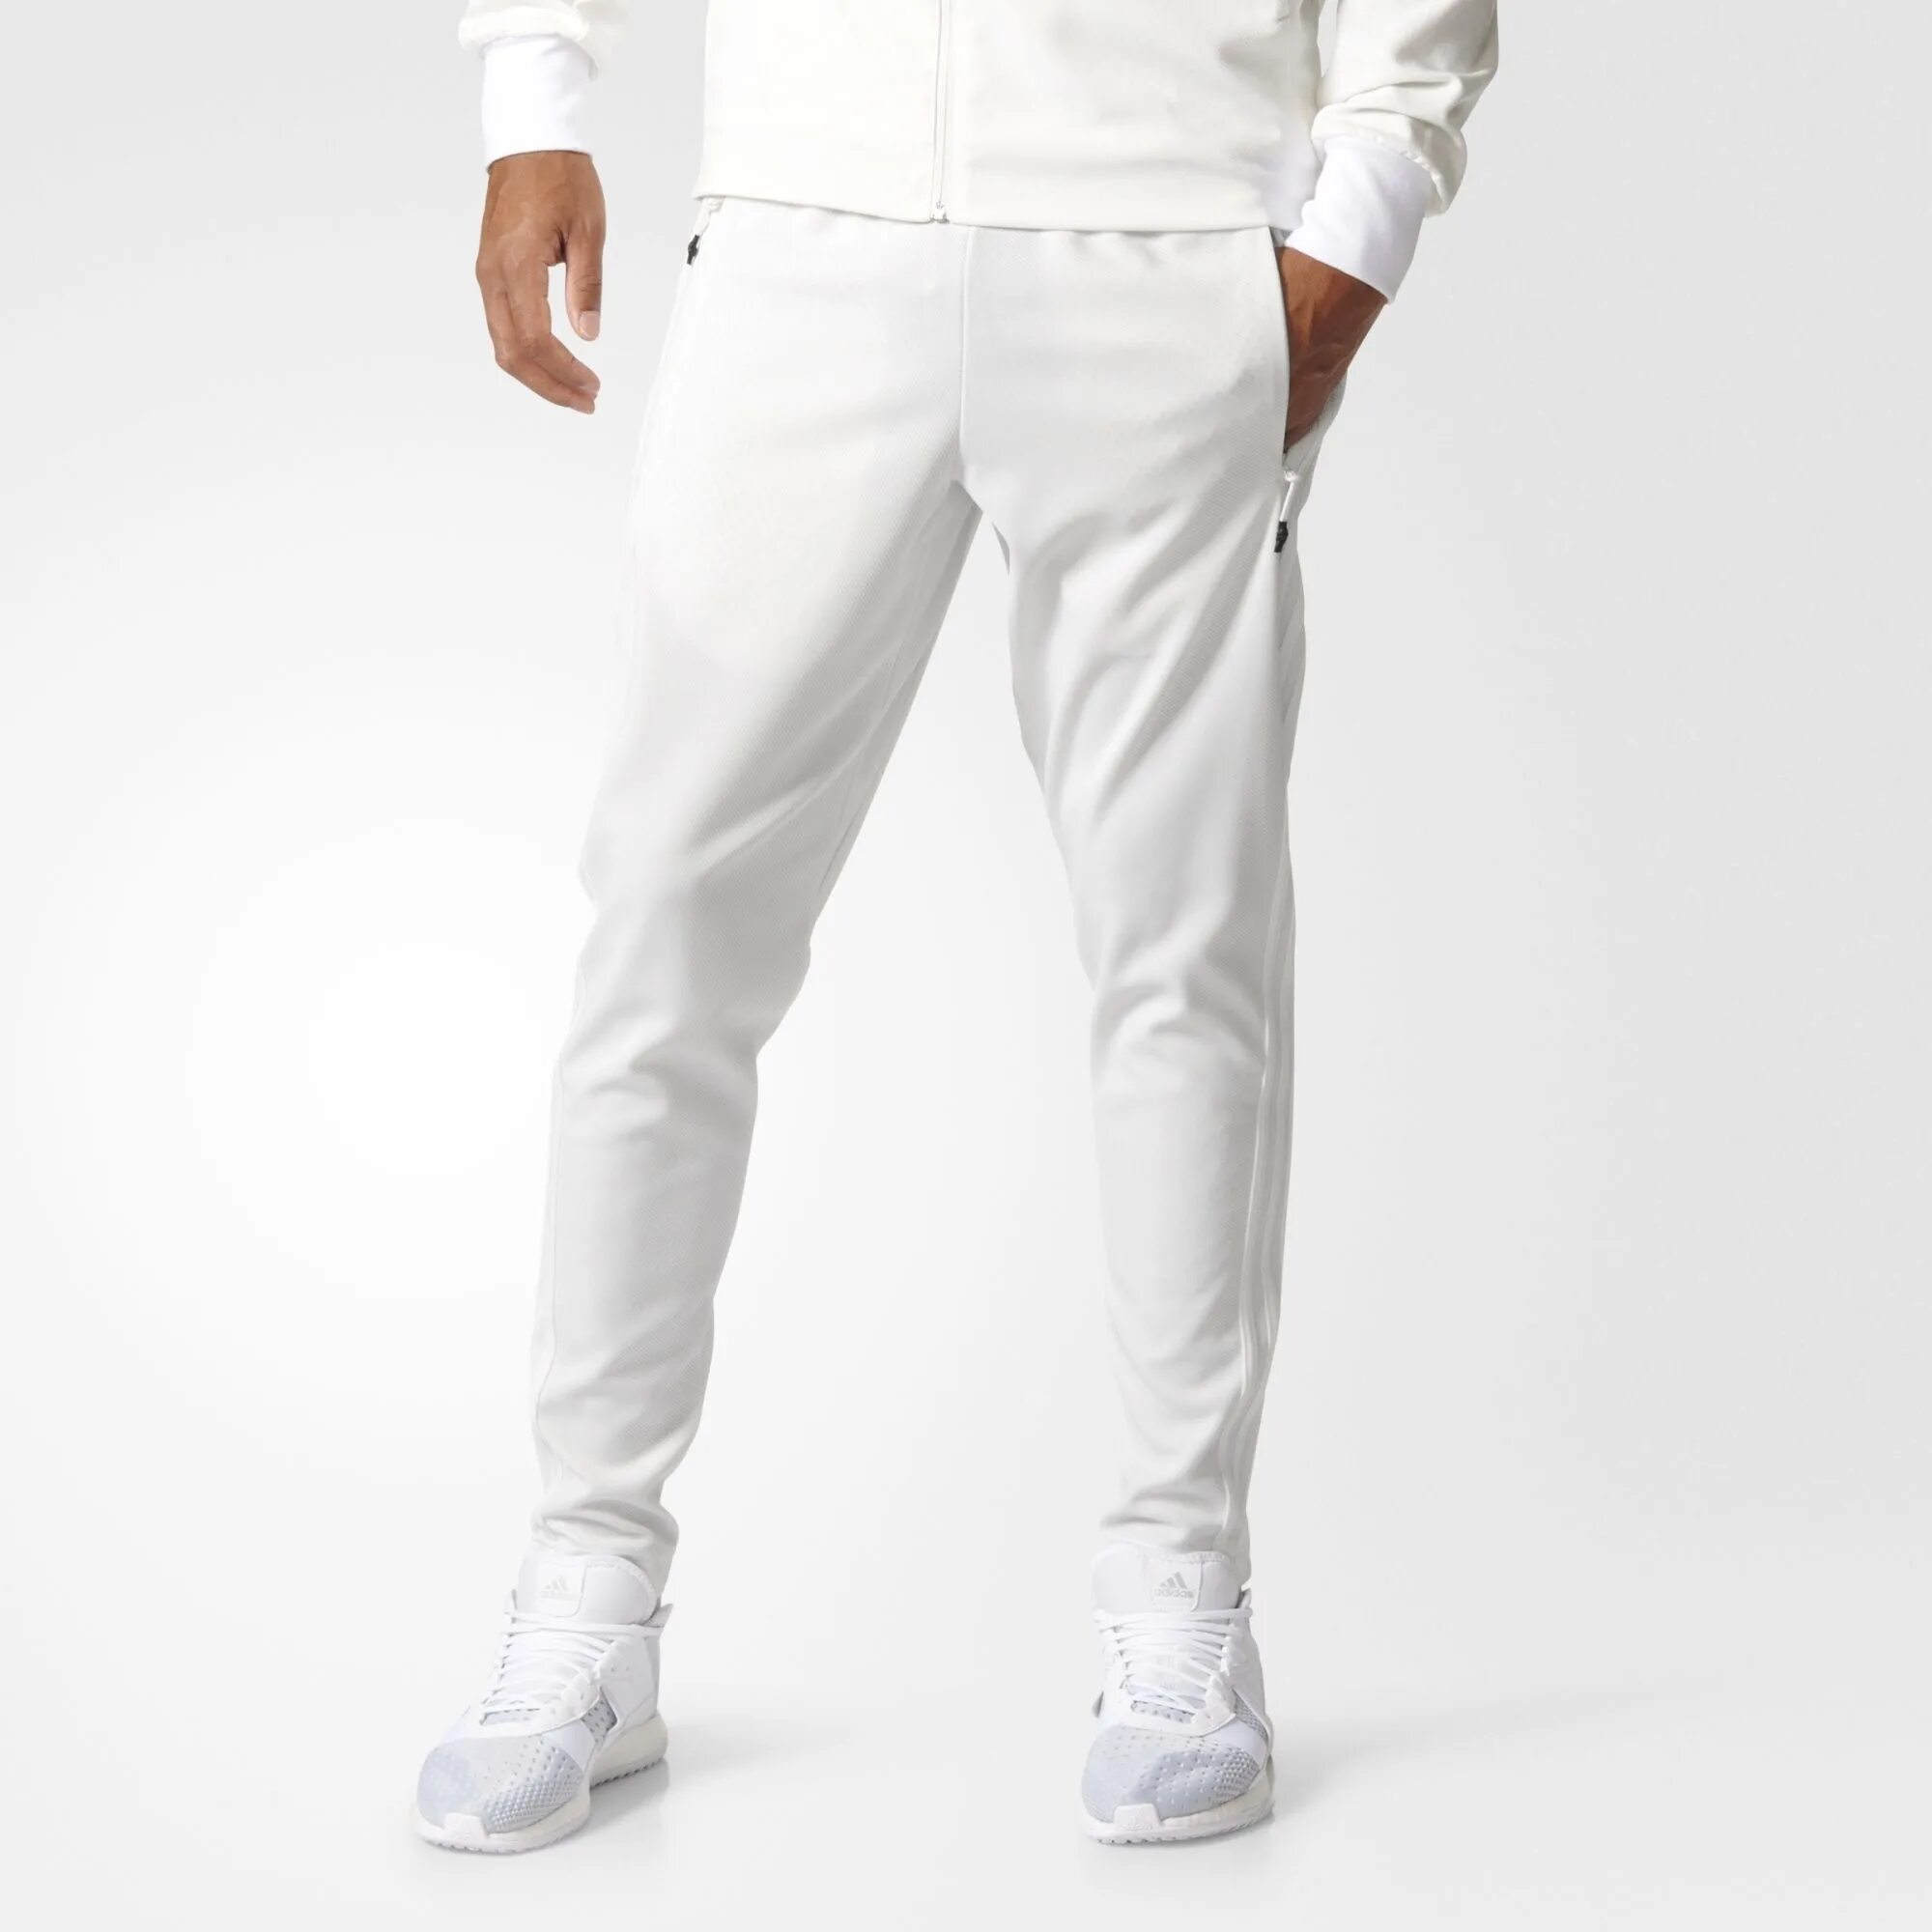 Валберис белые брюки. Белые спортивные штаны мужские адидас. Мужские белые спортивные штаны adidas. Брюки adidas белые. Брюки спортивные адидас белый.